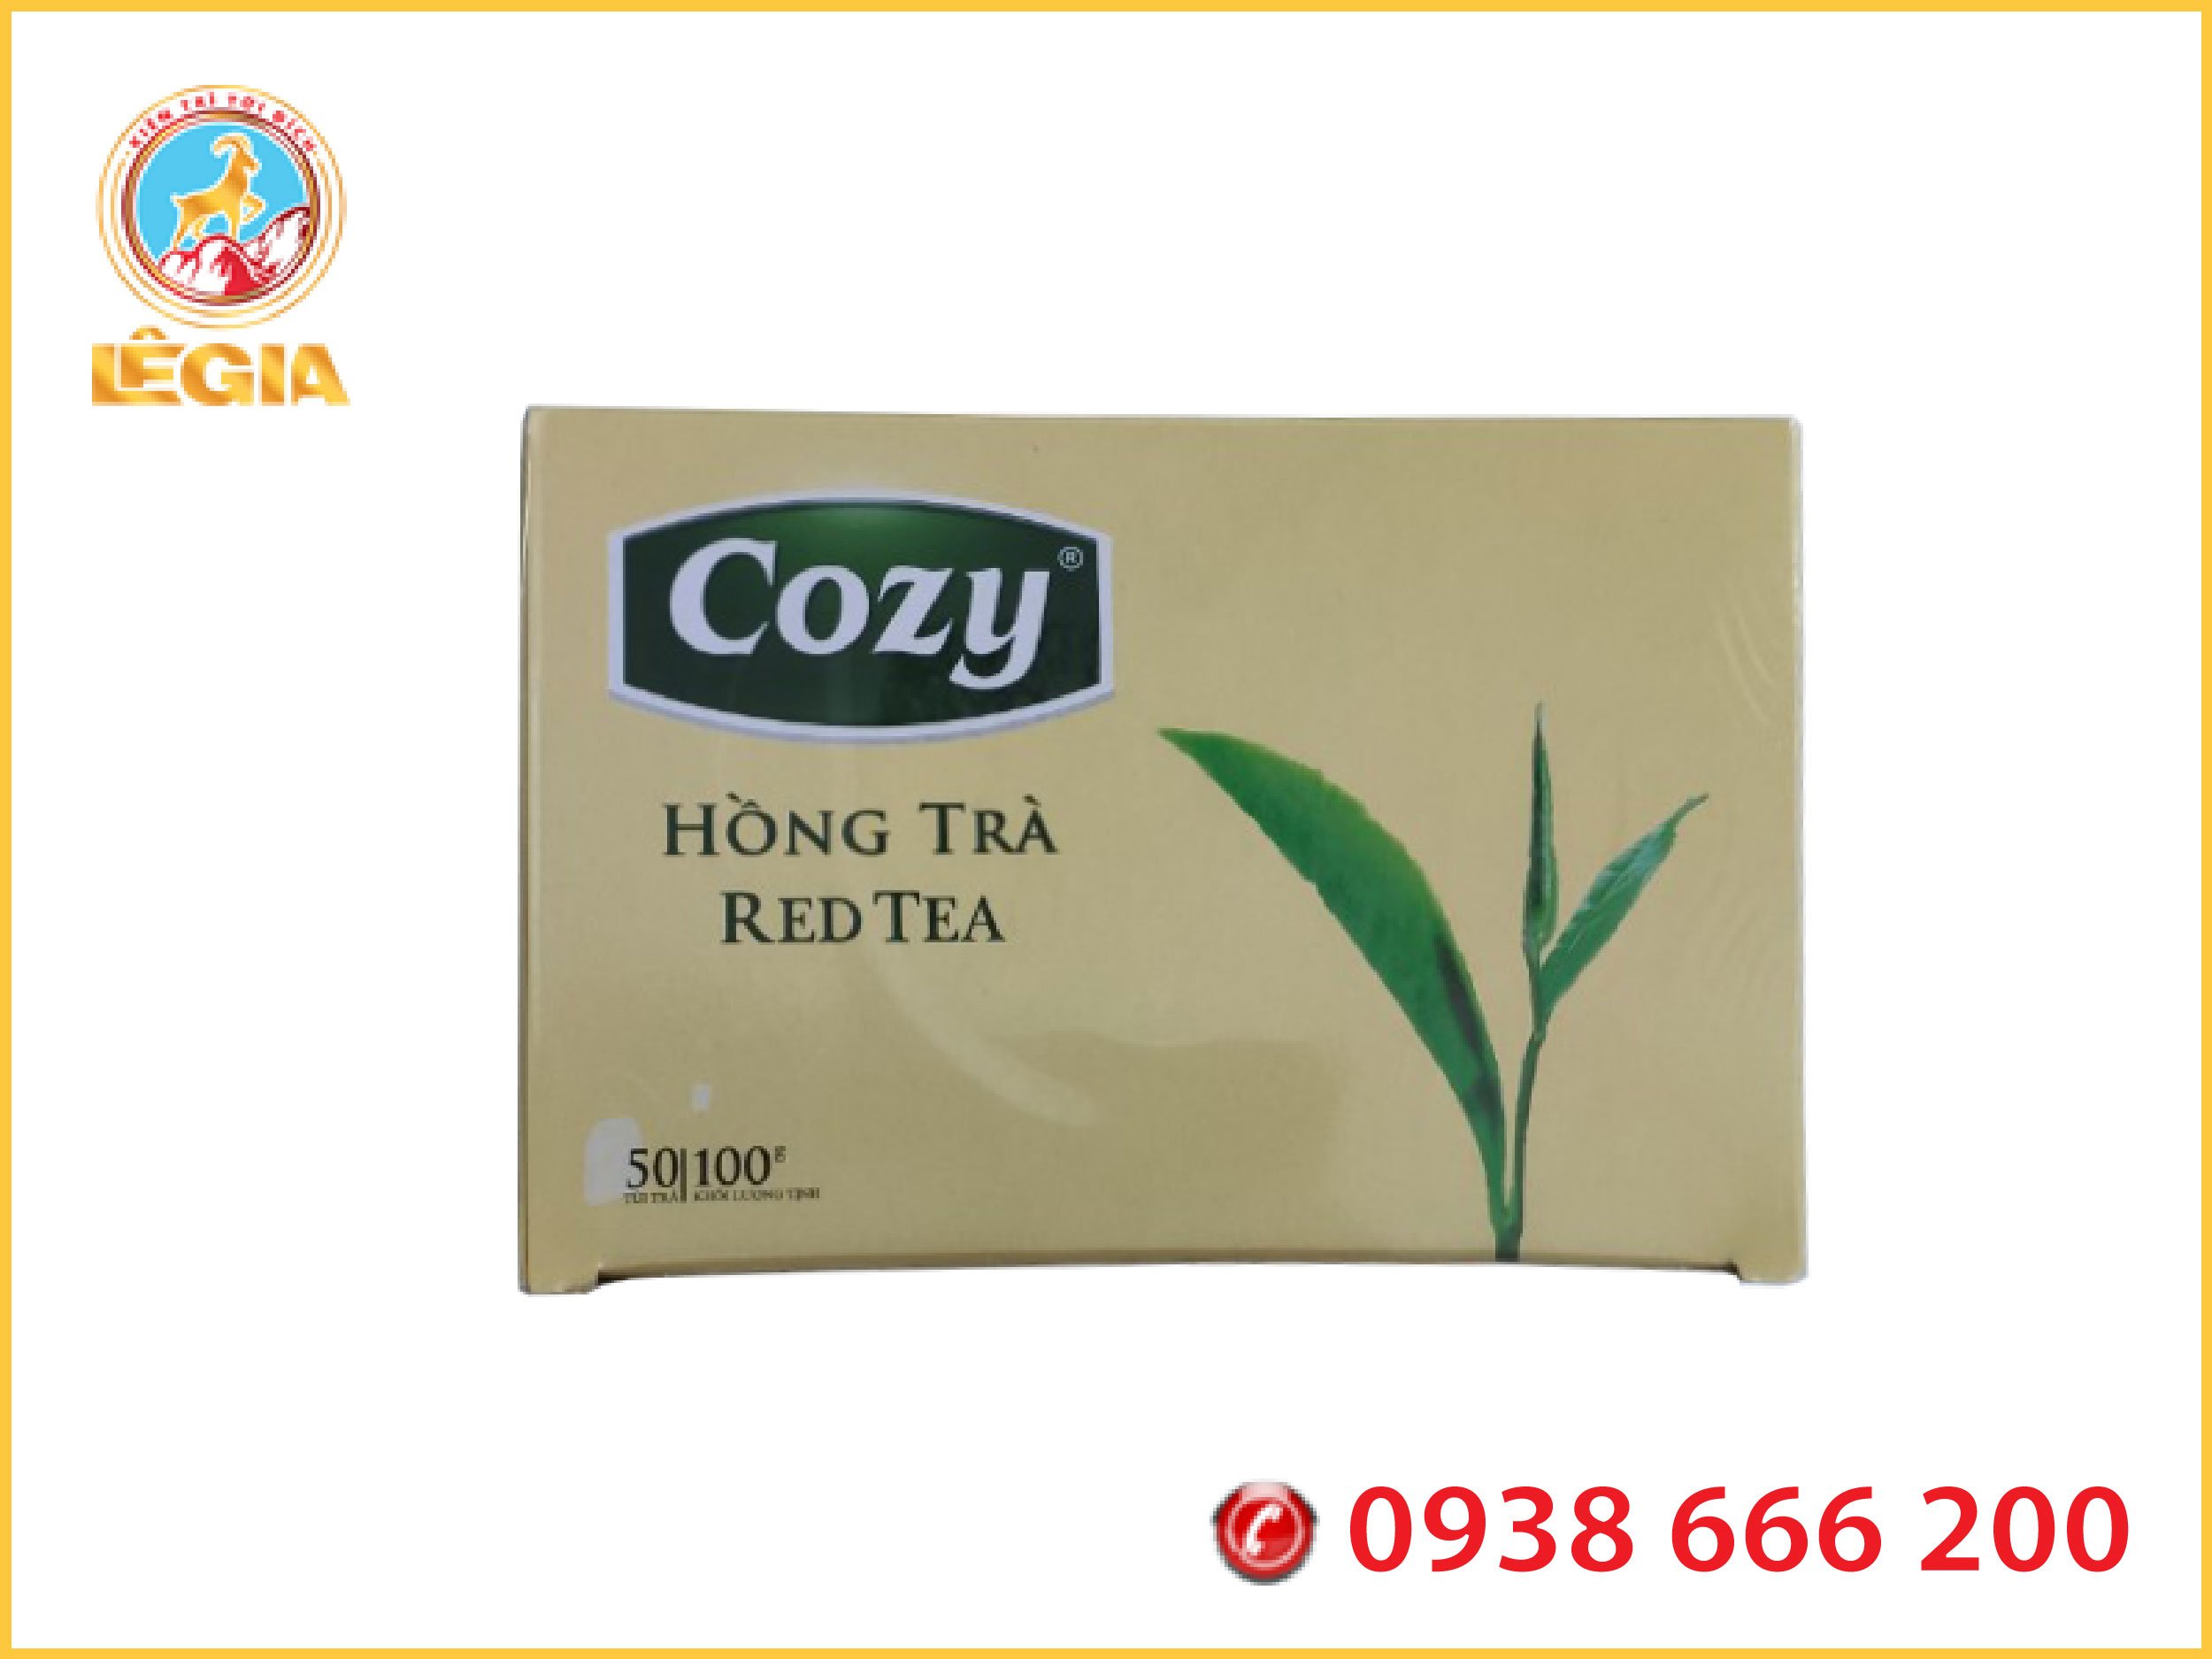 Hồng Trà Cozy túi lọc 50g 25 gói x 2g pha trà, trà sữa